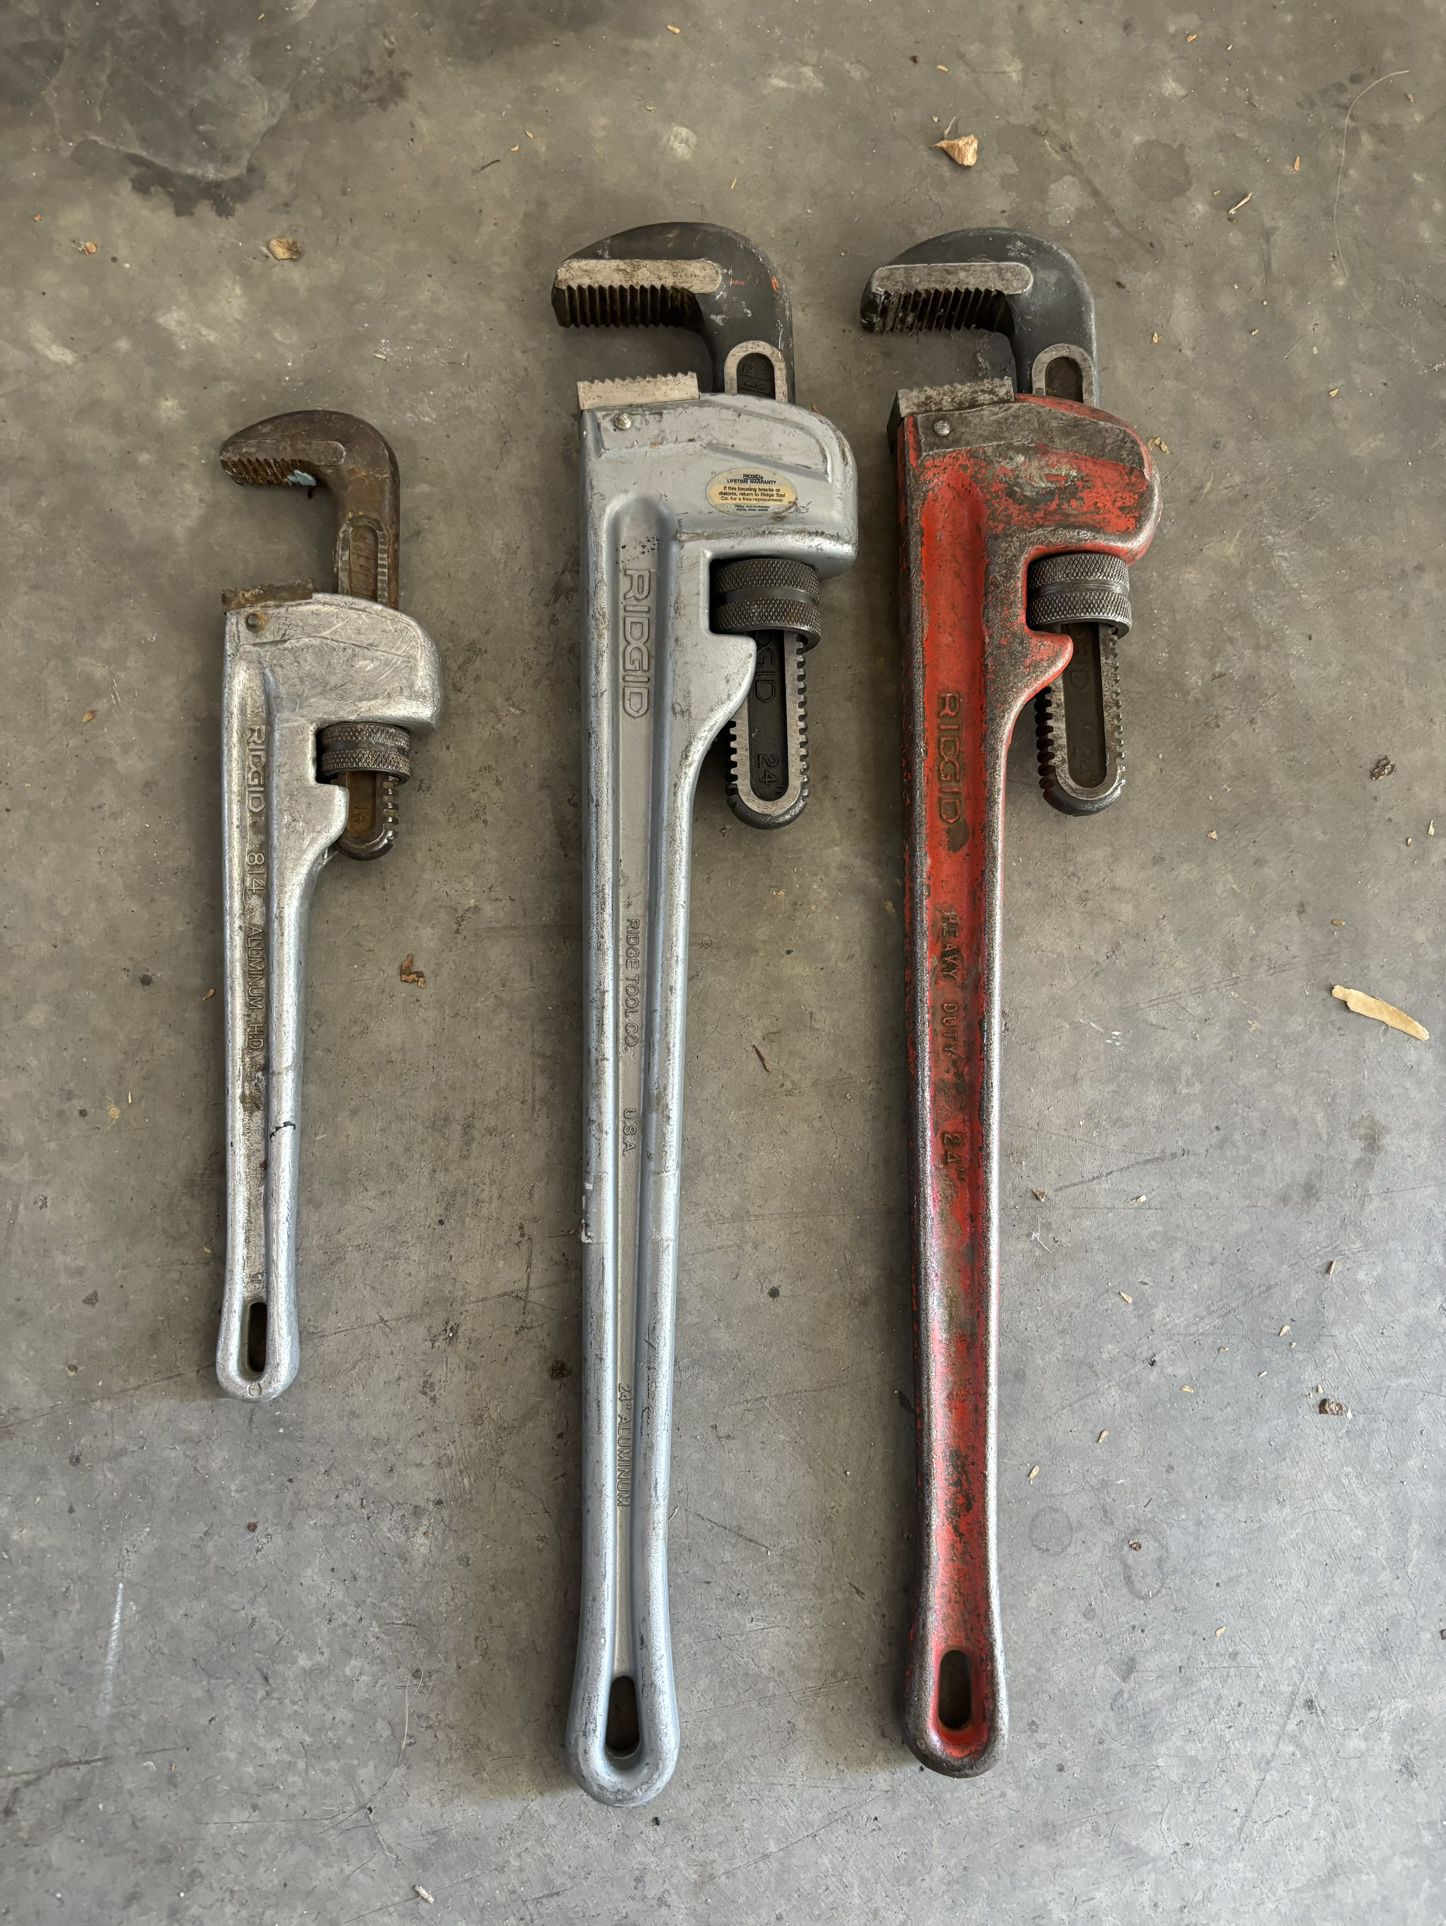 3 Rigid Pipe Wrenches 1 Aluminum 24” 1 - Steel 24” 1 Aluminum 14”